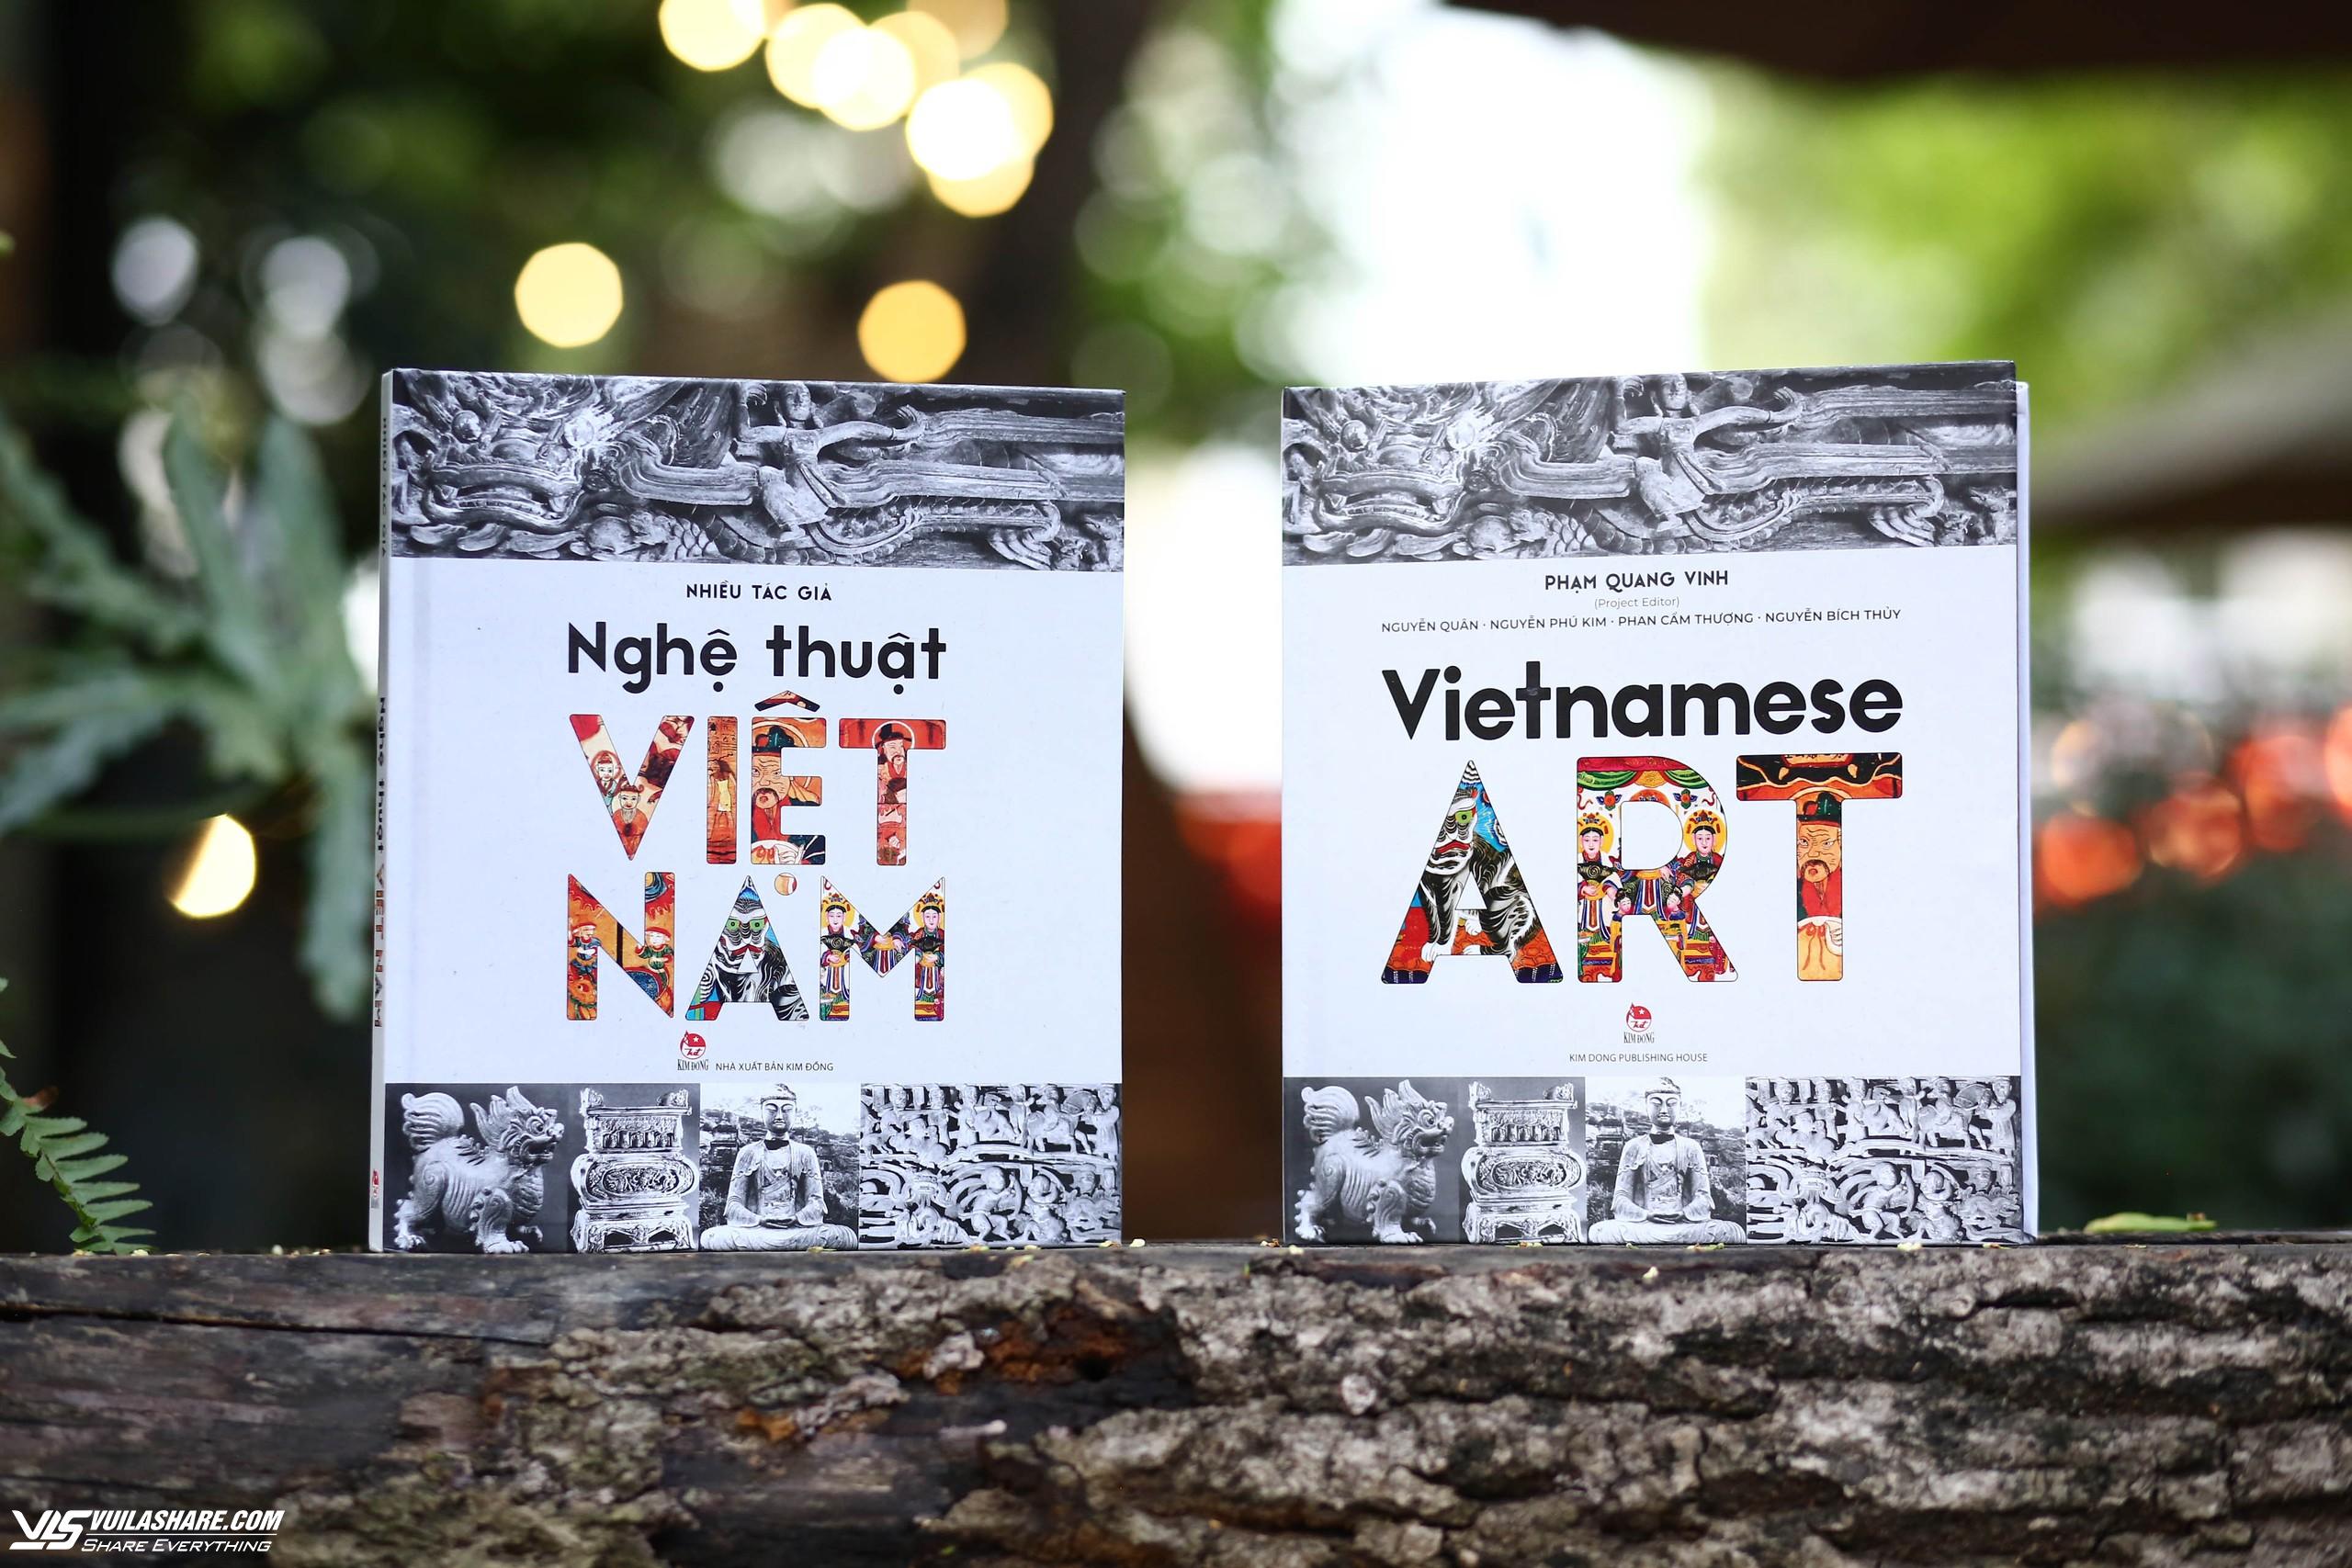 Rộn ràng tháng sách thiếu nhi: Tôn vinh giá trị văn hóa Việt- Ảnh 2.